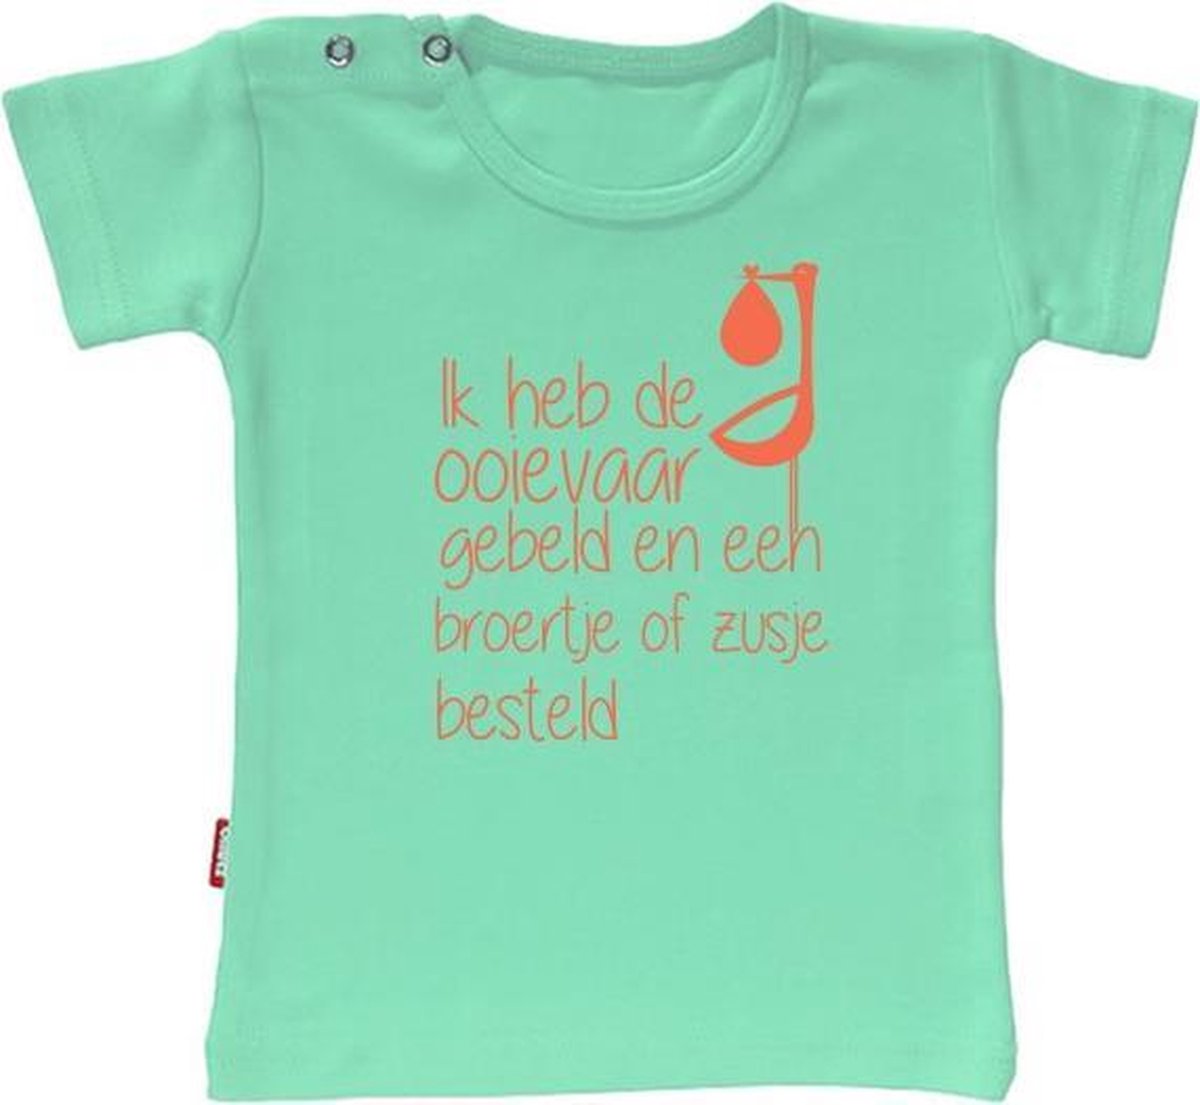 Babygoodies T-shirt - T-shirt - T-shirt - Ik heb de ooievaar gebeld en een broertje of zusje besteld (Mint 3-4j)